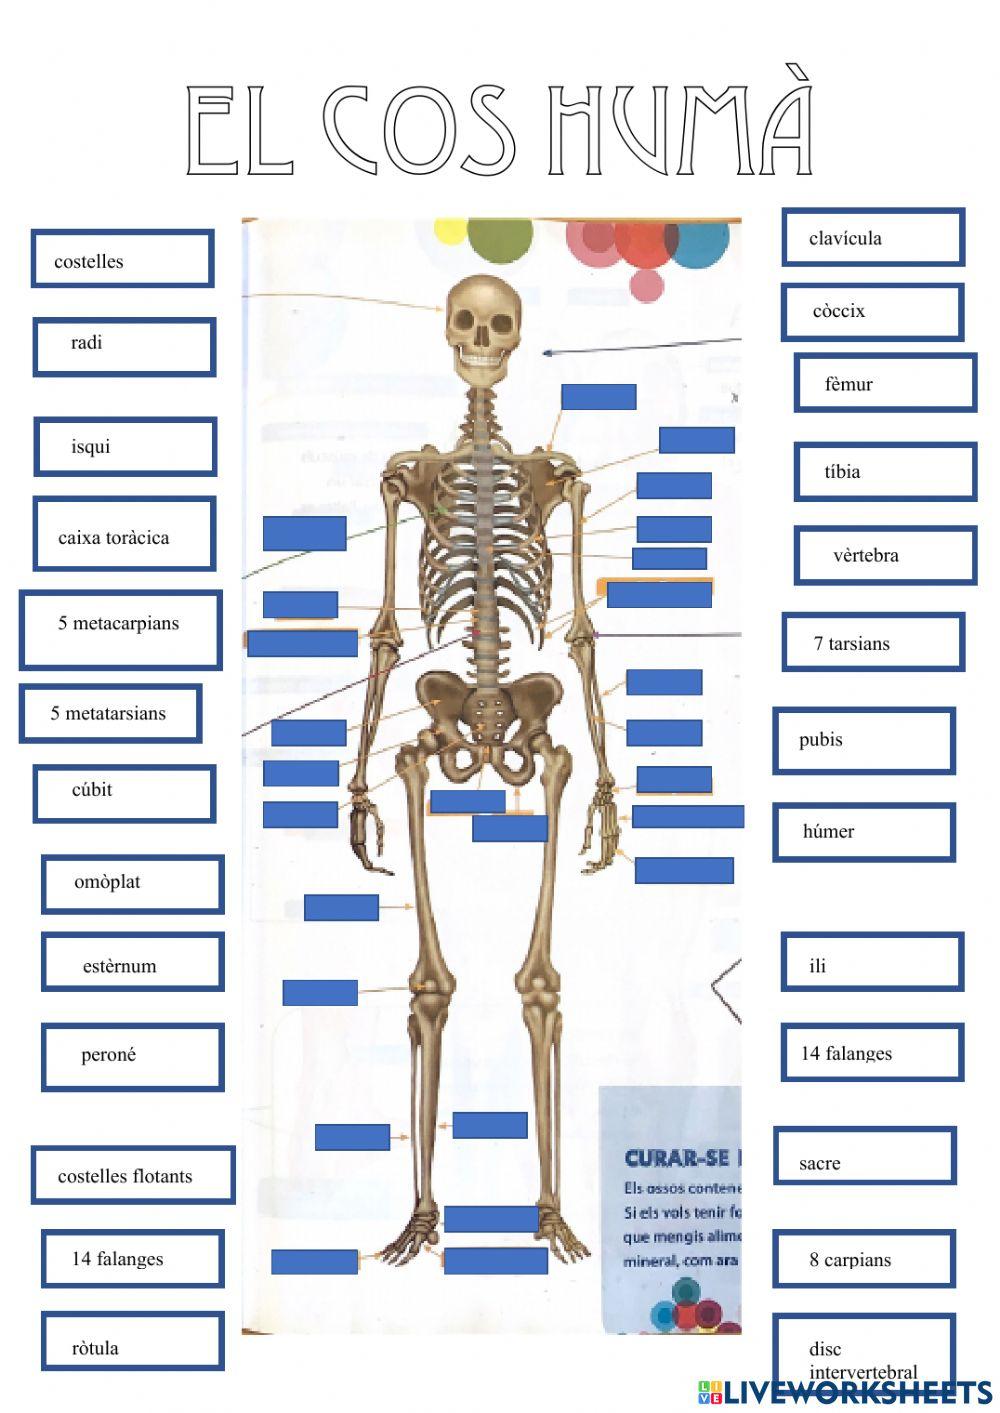 El cos humà-ossos